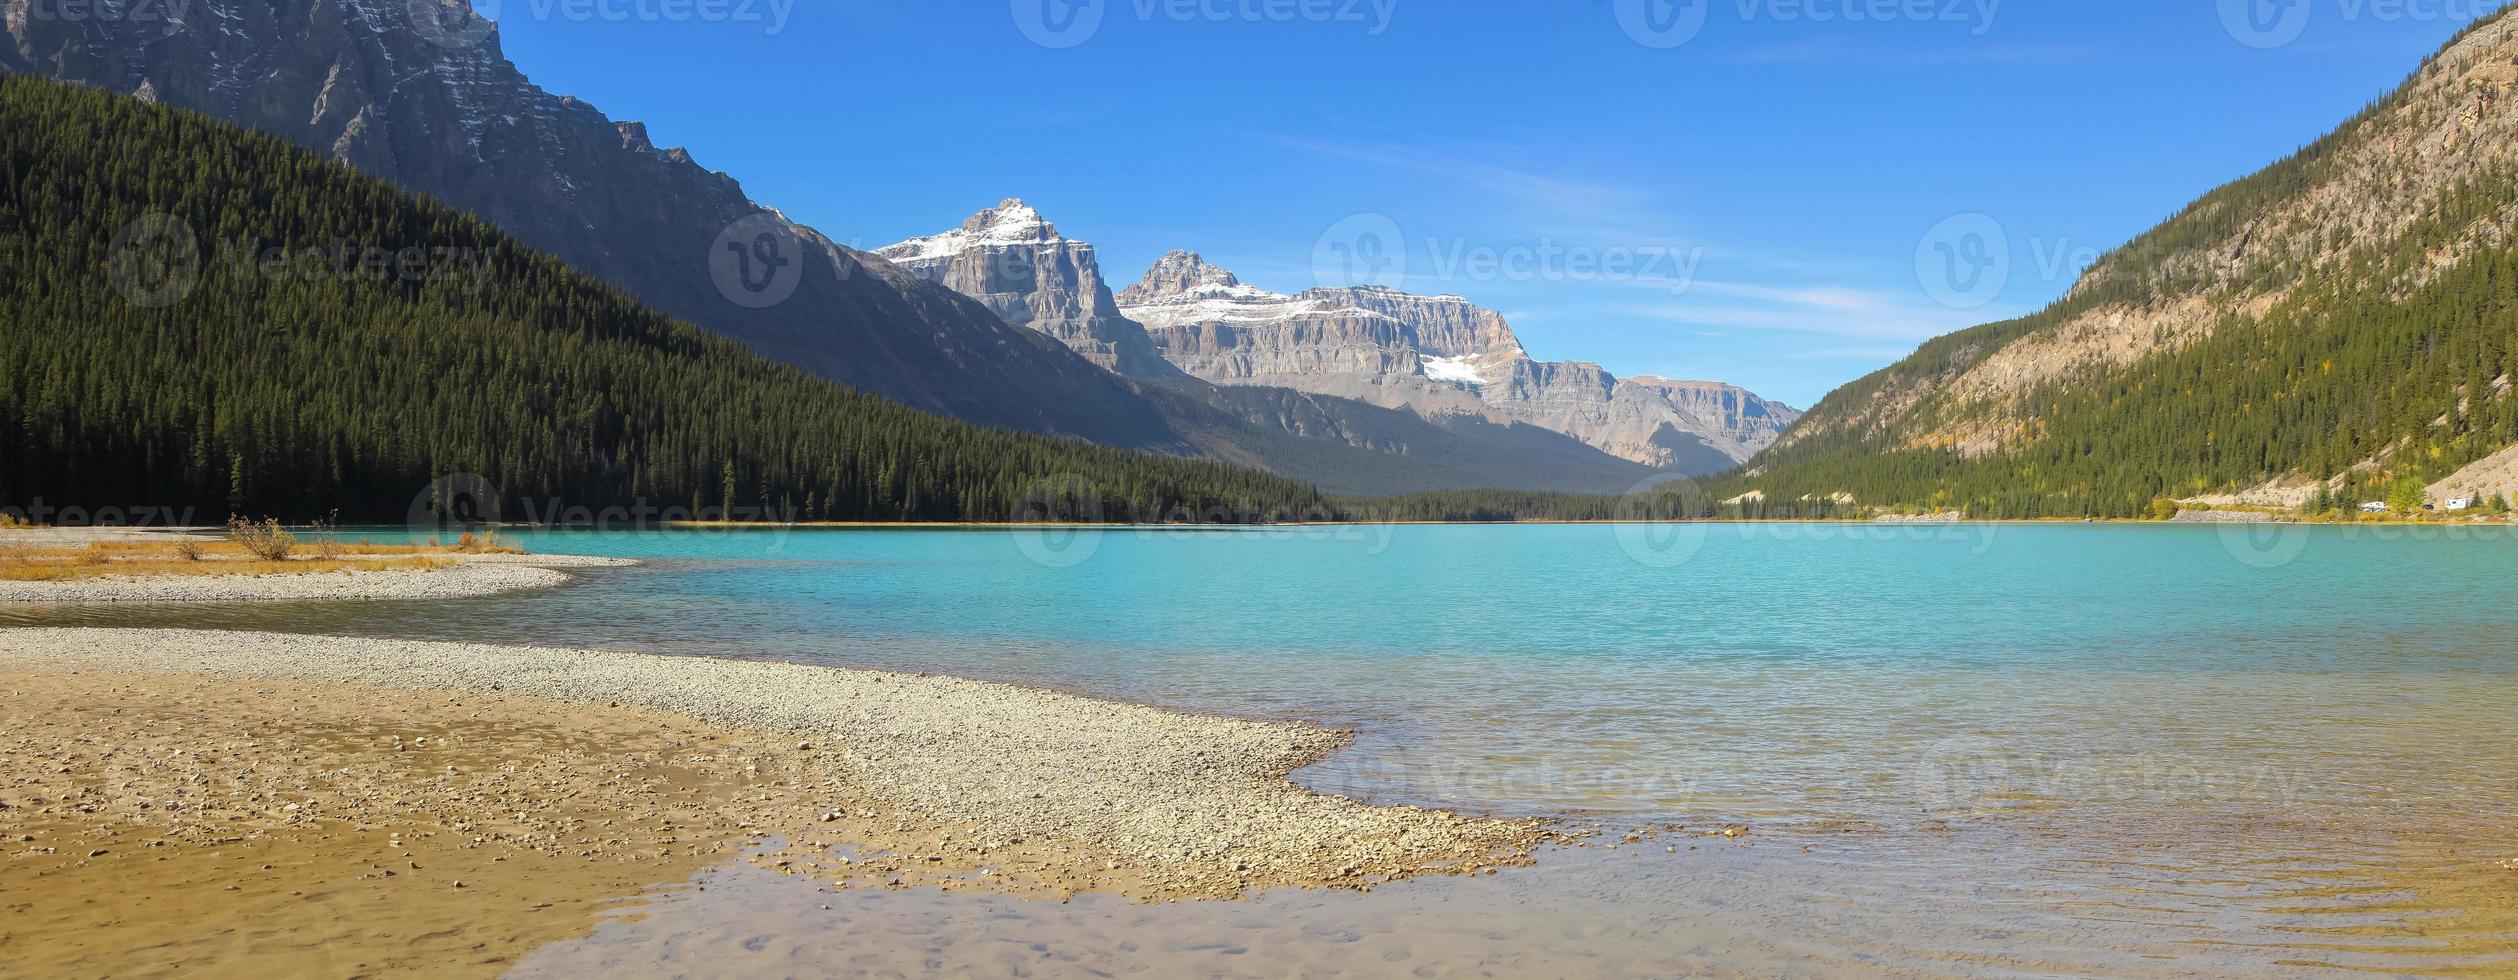 vista panorámica de las montañas rocosas canadienses, alrededor del pintoresco lago bow en el parque nacional de banff. foto